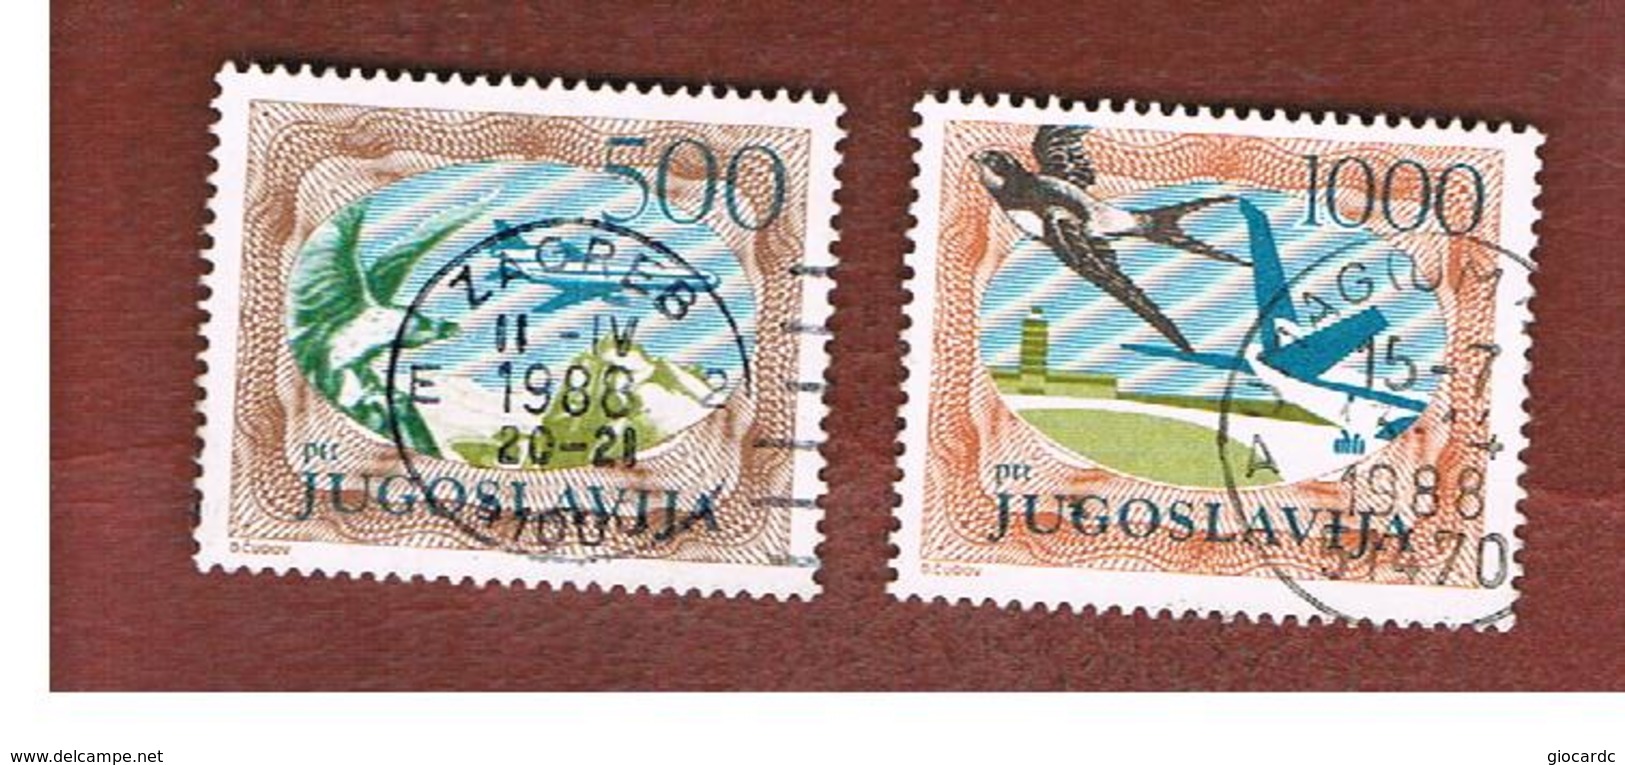 JUGOSLAVIA (YUGOSLAVIA)   - SG 2197.2199  -    1985  AIR: BIRDS & AIRPLANES (COMPLET SET OF 2)   -  USED - Usati